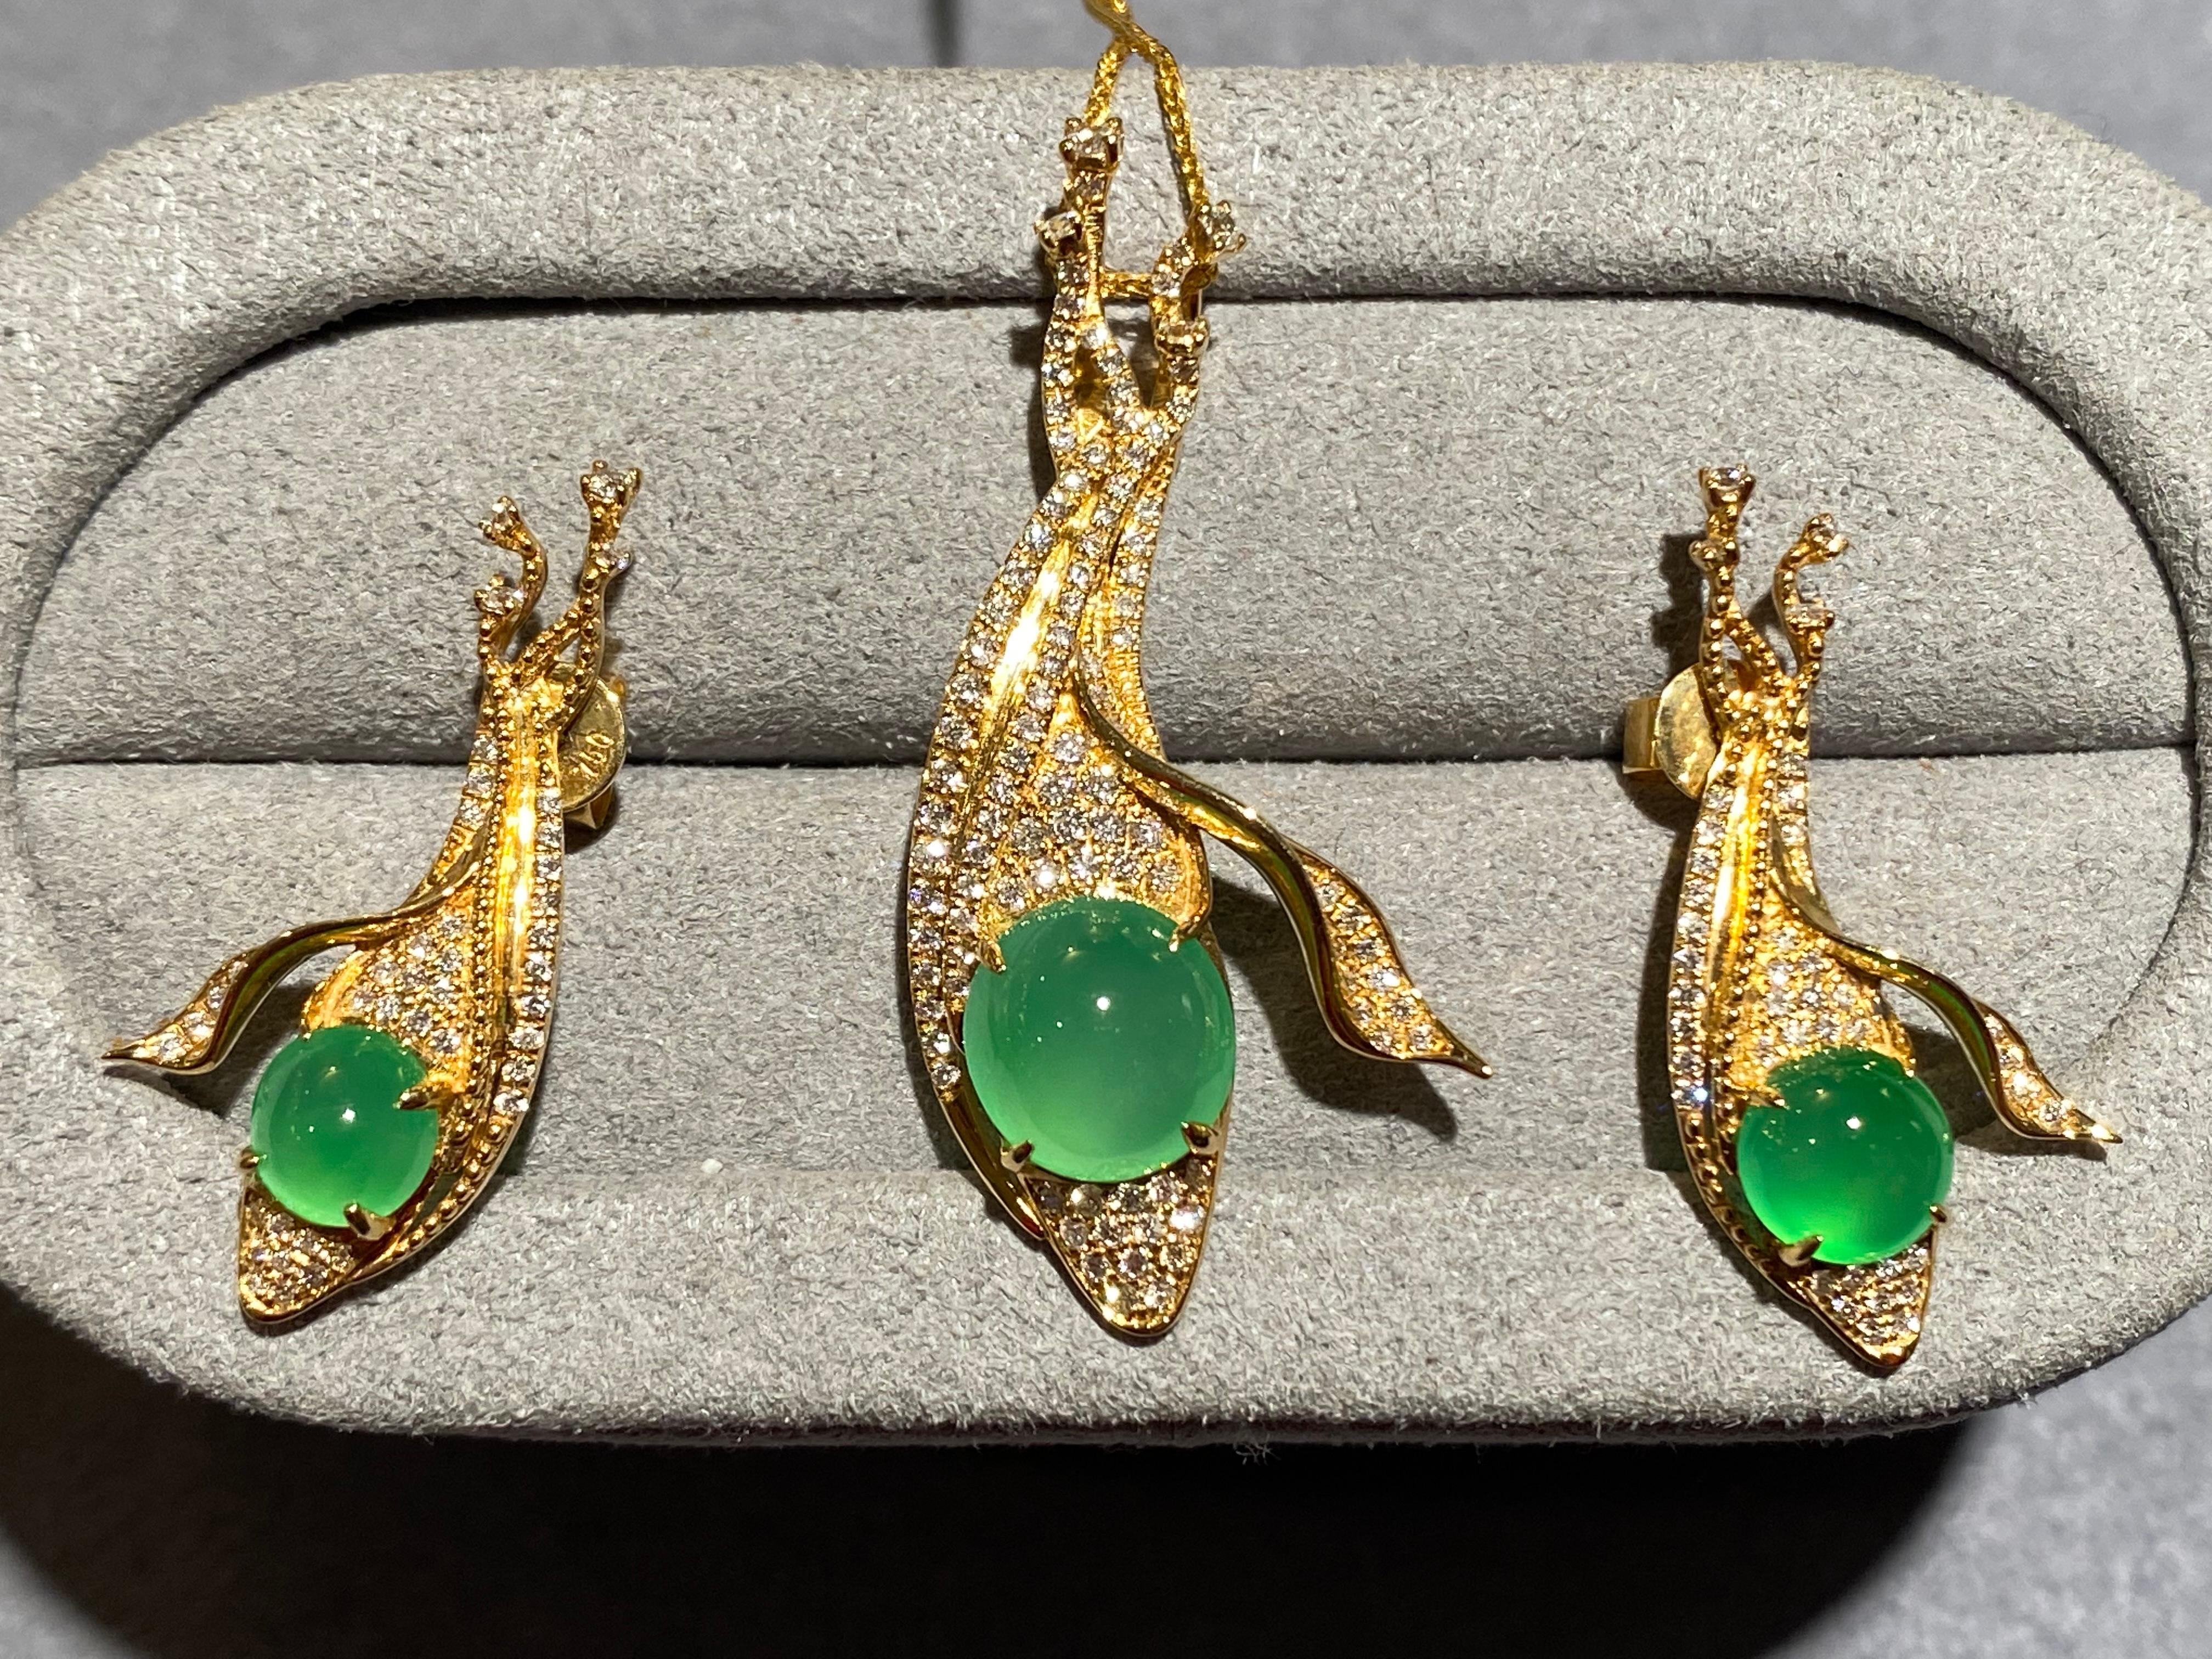 Dieses Schmuckset besteht aus einem Paar Ohrringe mit grünem Jadeit und Diamanten vom Typ A und einem passenden Anhänger mit grünem Jadeit und Diamanten vom Typ A aus 18 Karat Gelbgold. Der Jadeit ist auf einem mehrlagigen Band gefasst, das mit